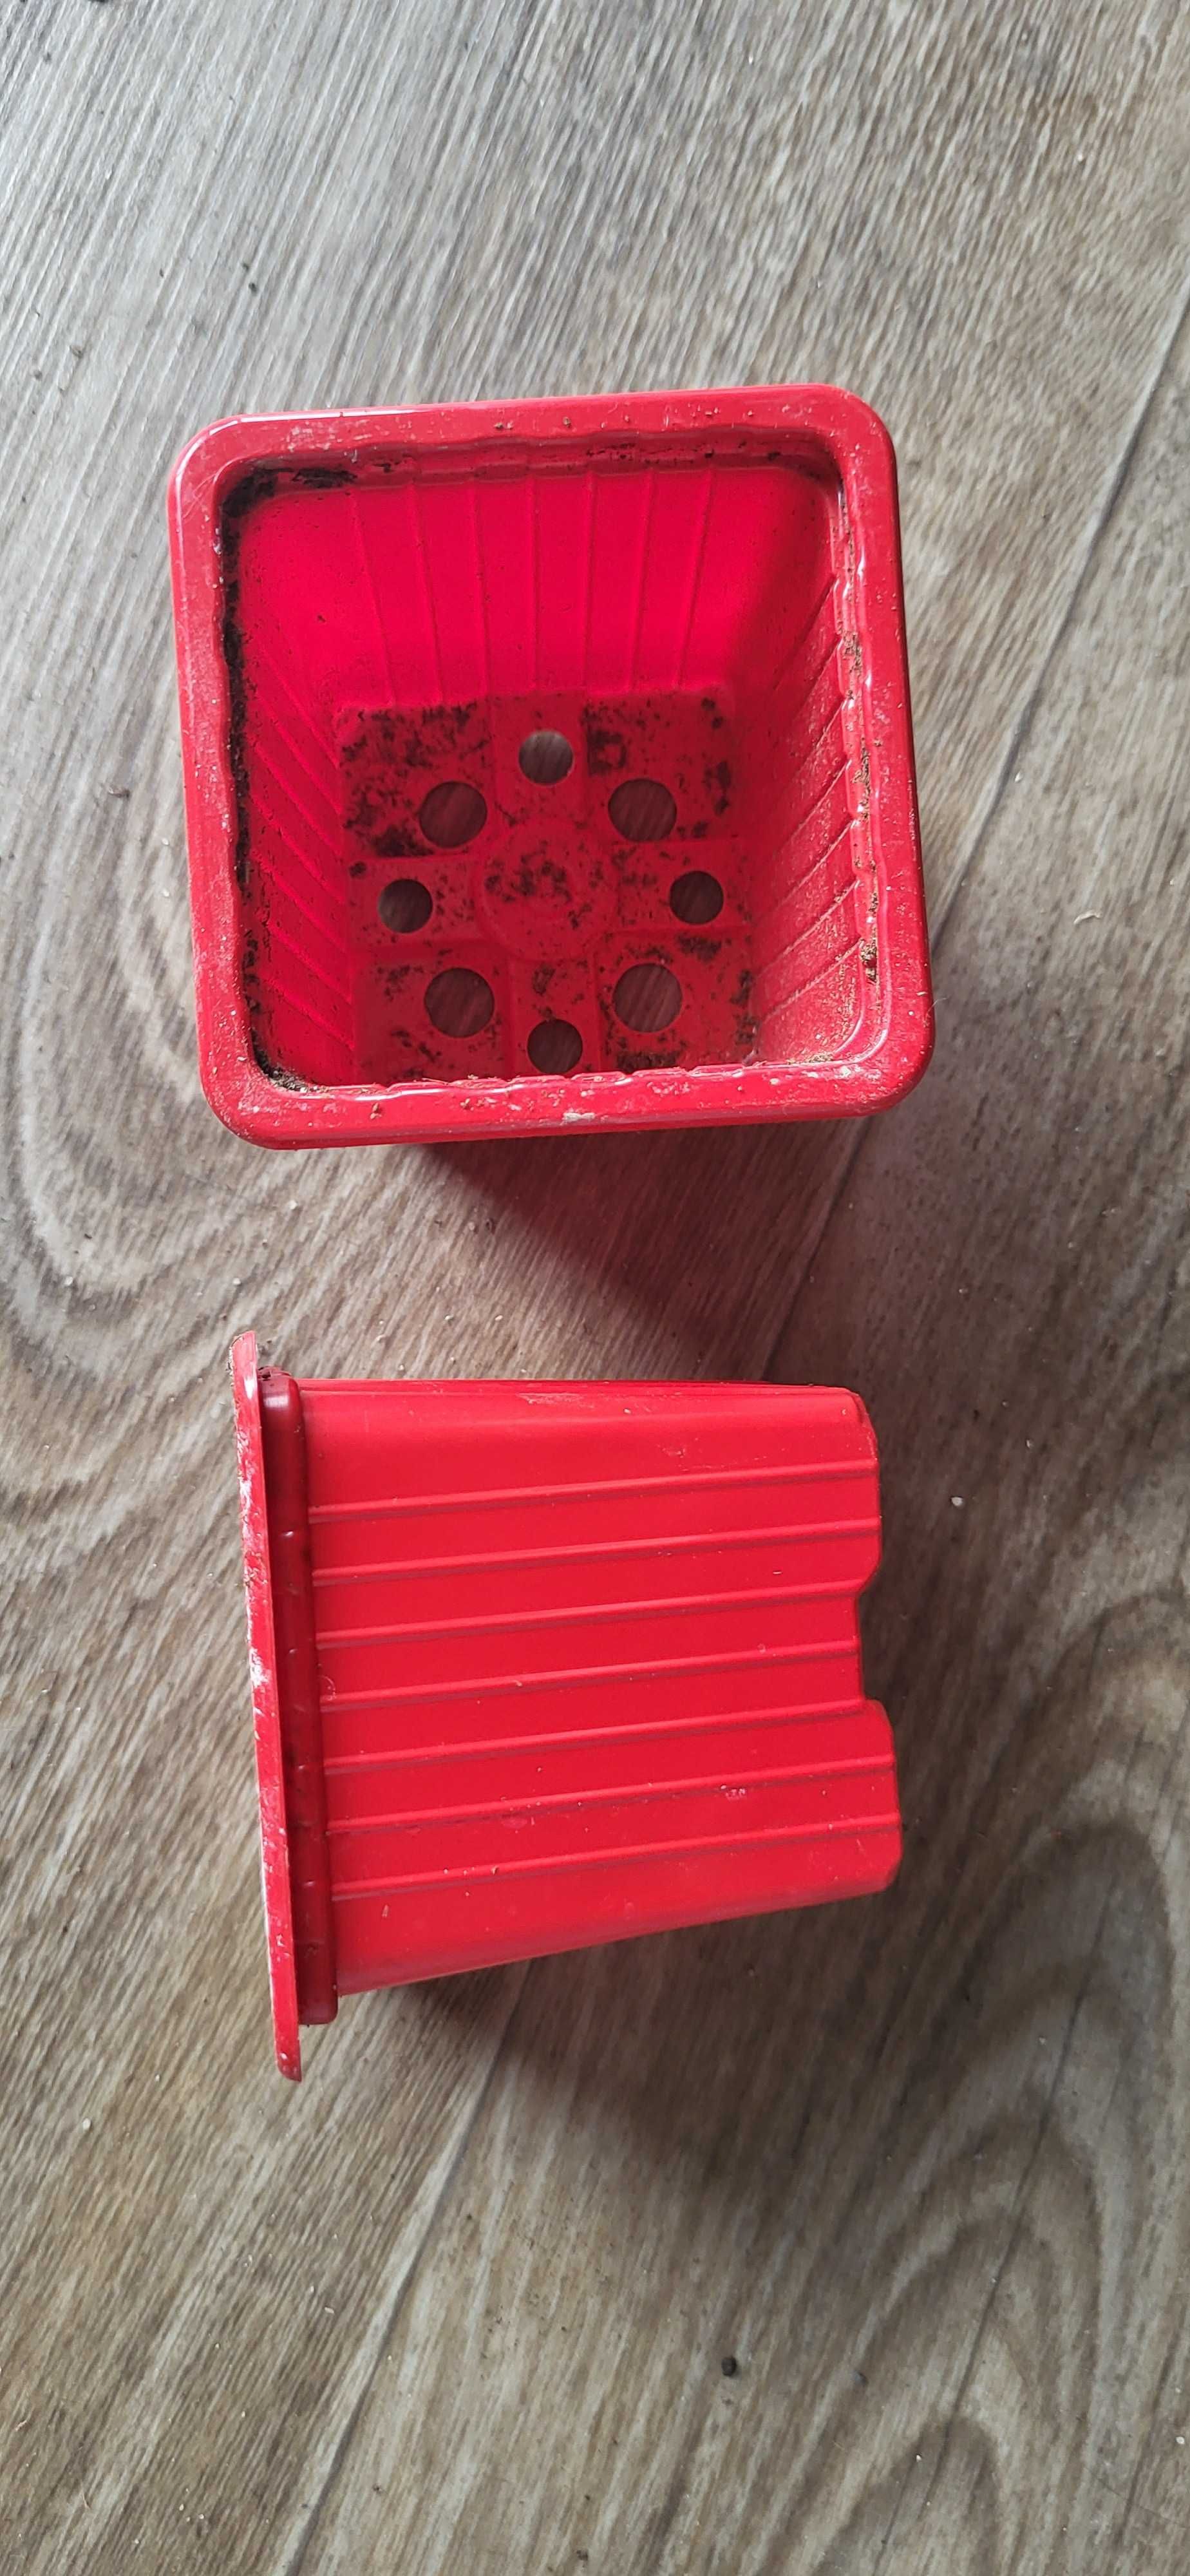 Doniczka 7x7x6,4 (7x7x7) czerwona , różowa używana miękka około 0,25 l